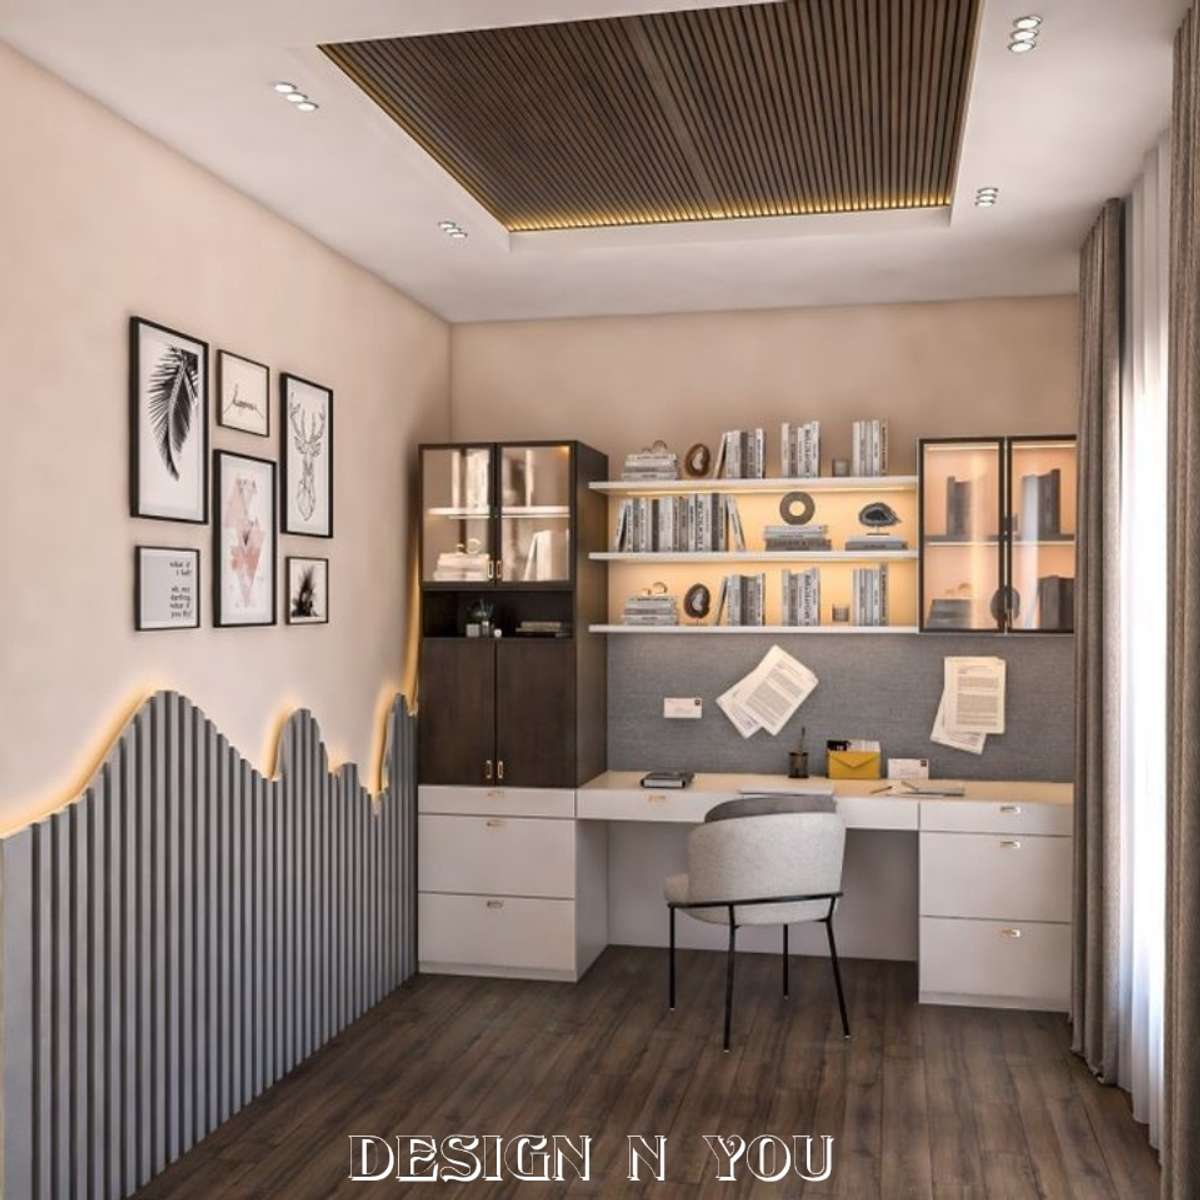 Furniture, Bedroom Designs by Interior Designer paridhi rai, Jaipur | Kolo